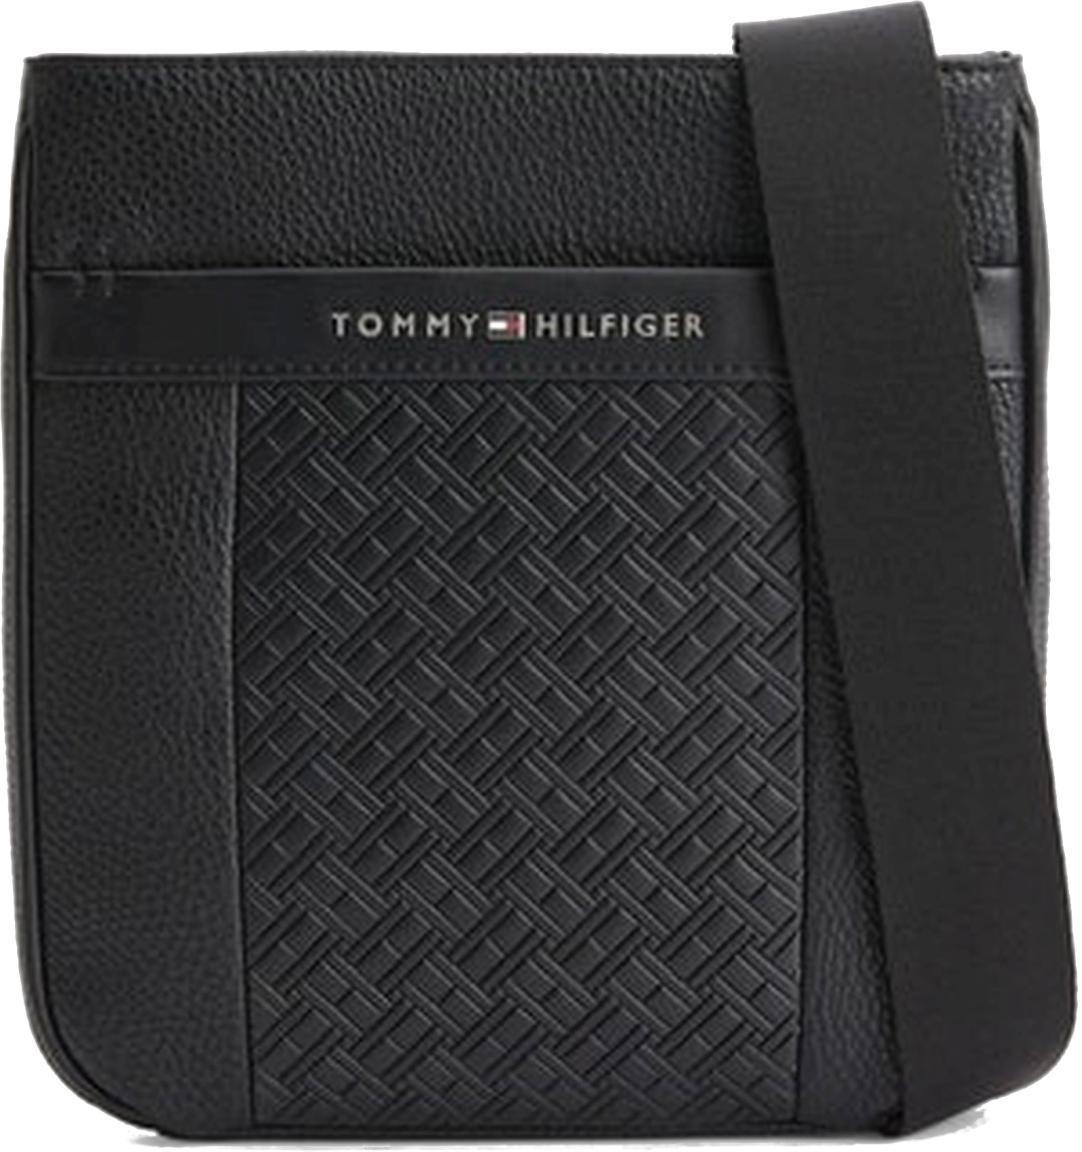 Central Mini Crossover Herrentasche Tommy Hilfiger Slim Markenprägung Black